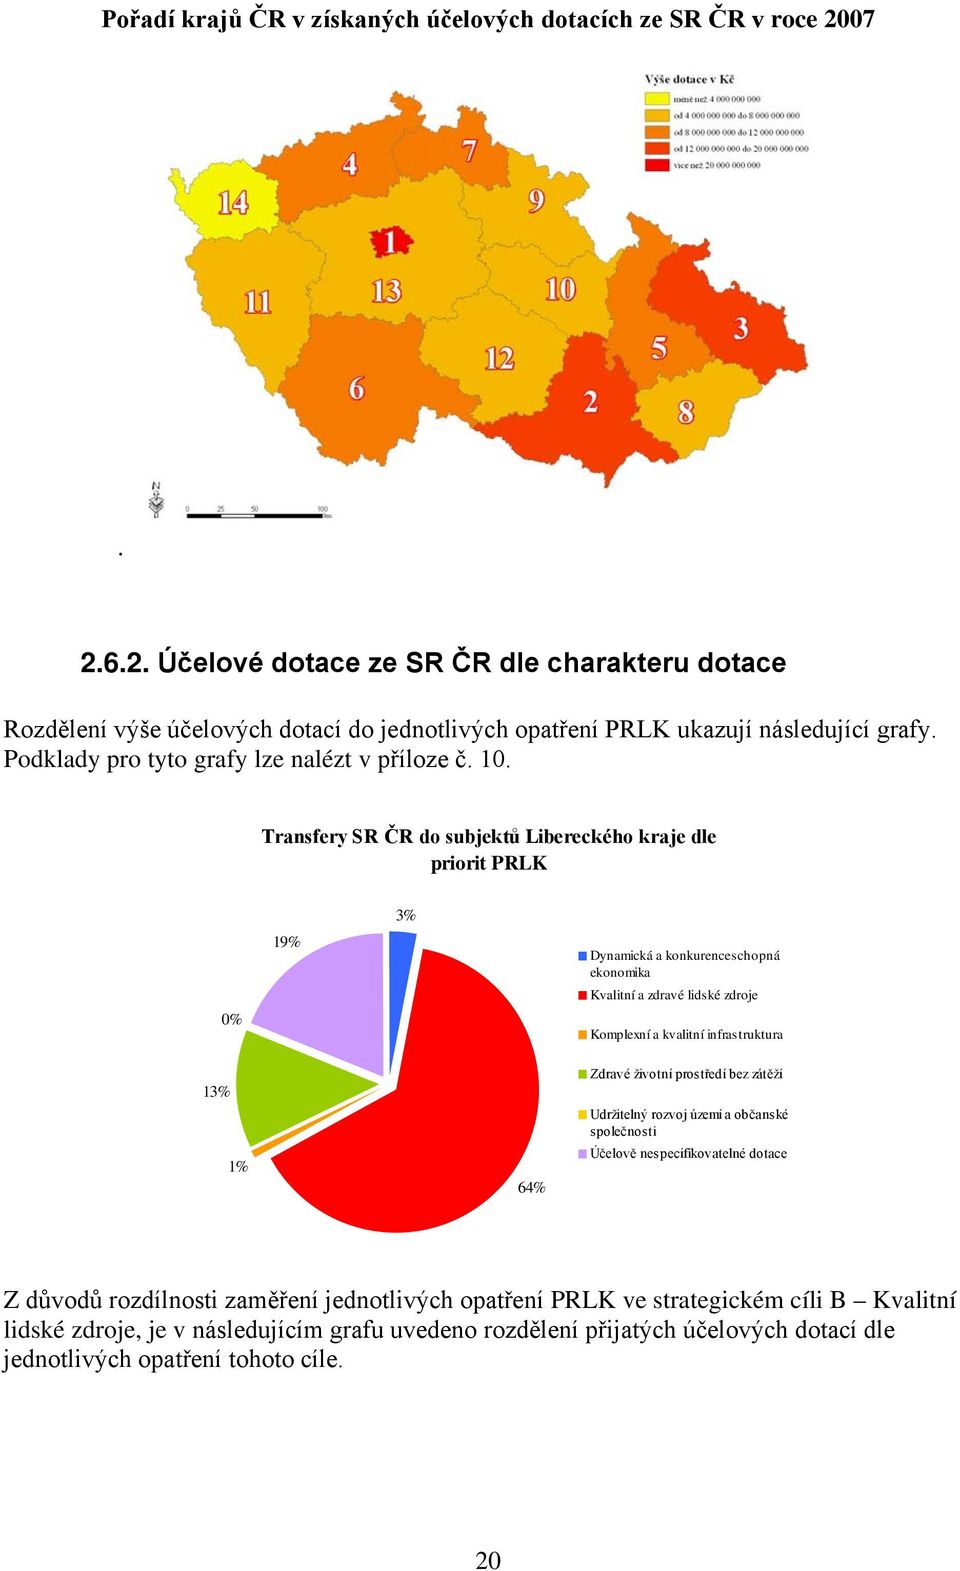 Transfery SR ČR do subjektů Libereckého kraje dle priorit PRLK 0% 19% 3% Dynamická a konkurenceschopná ekonomika Kvalitní a zdravé lidské zdroje Komplexní a kvalitní infrastruktura 13% 1% 64%